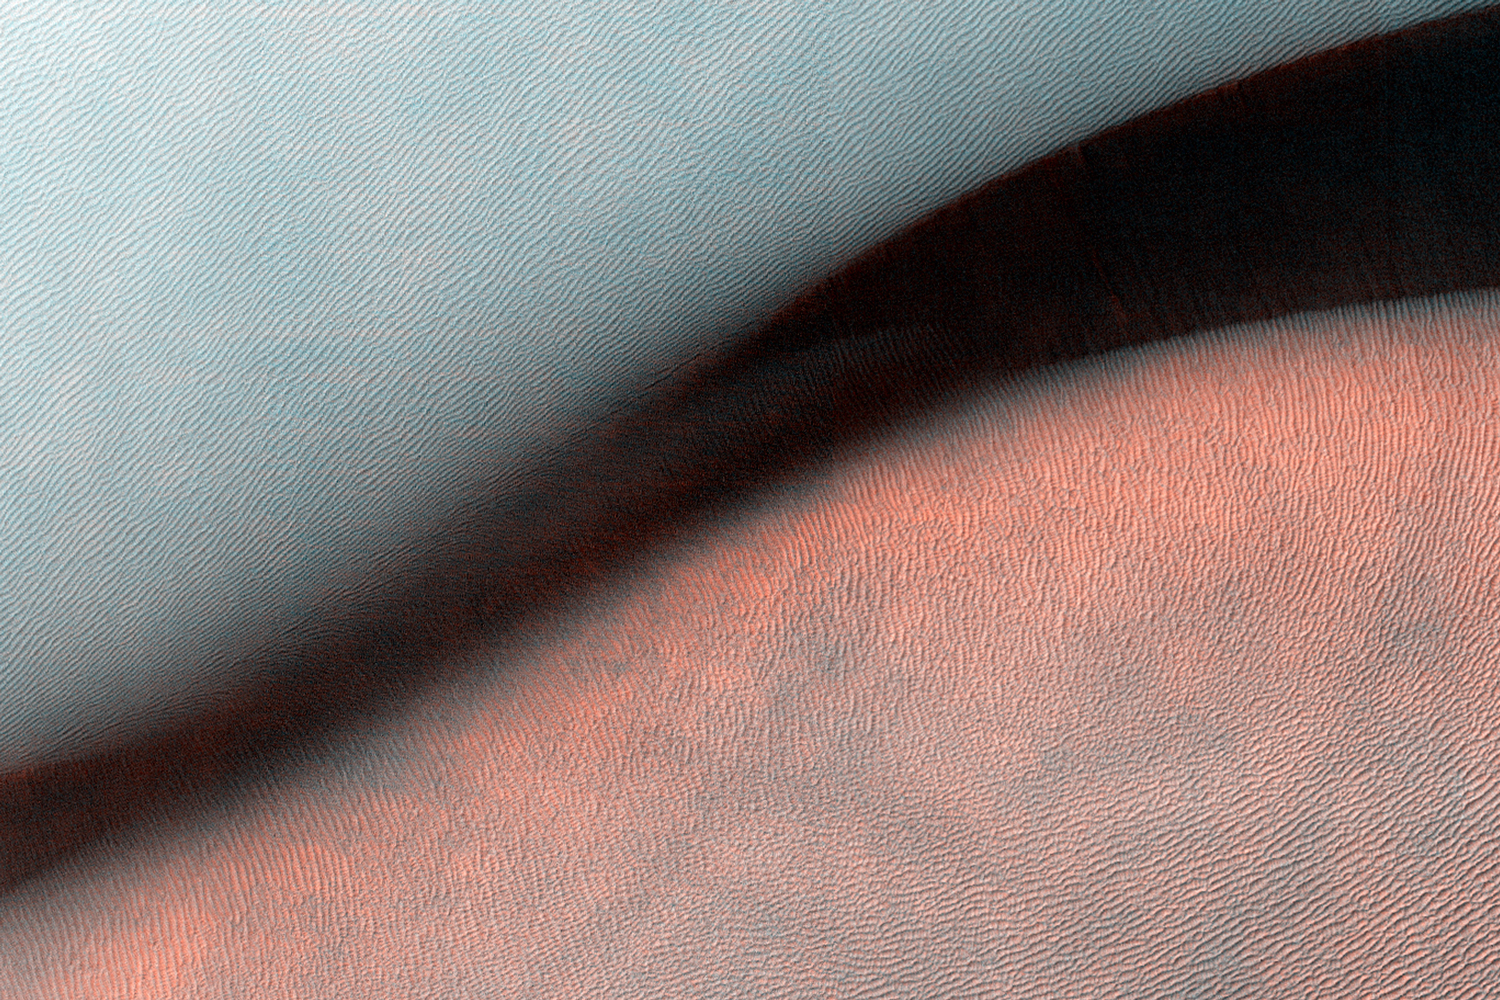 Os presentamos una drra gigante, un accidente geográfico originado por el viento en Marte